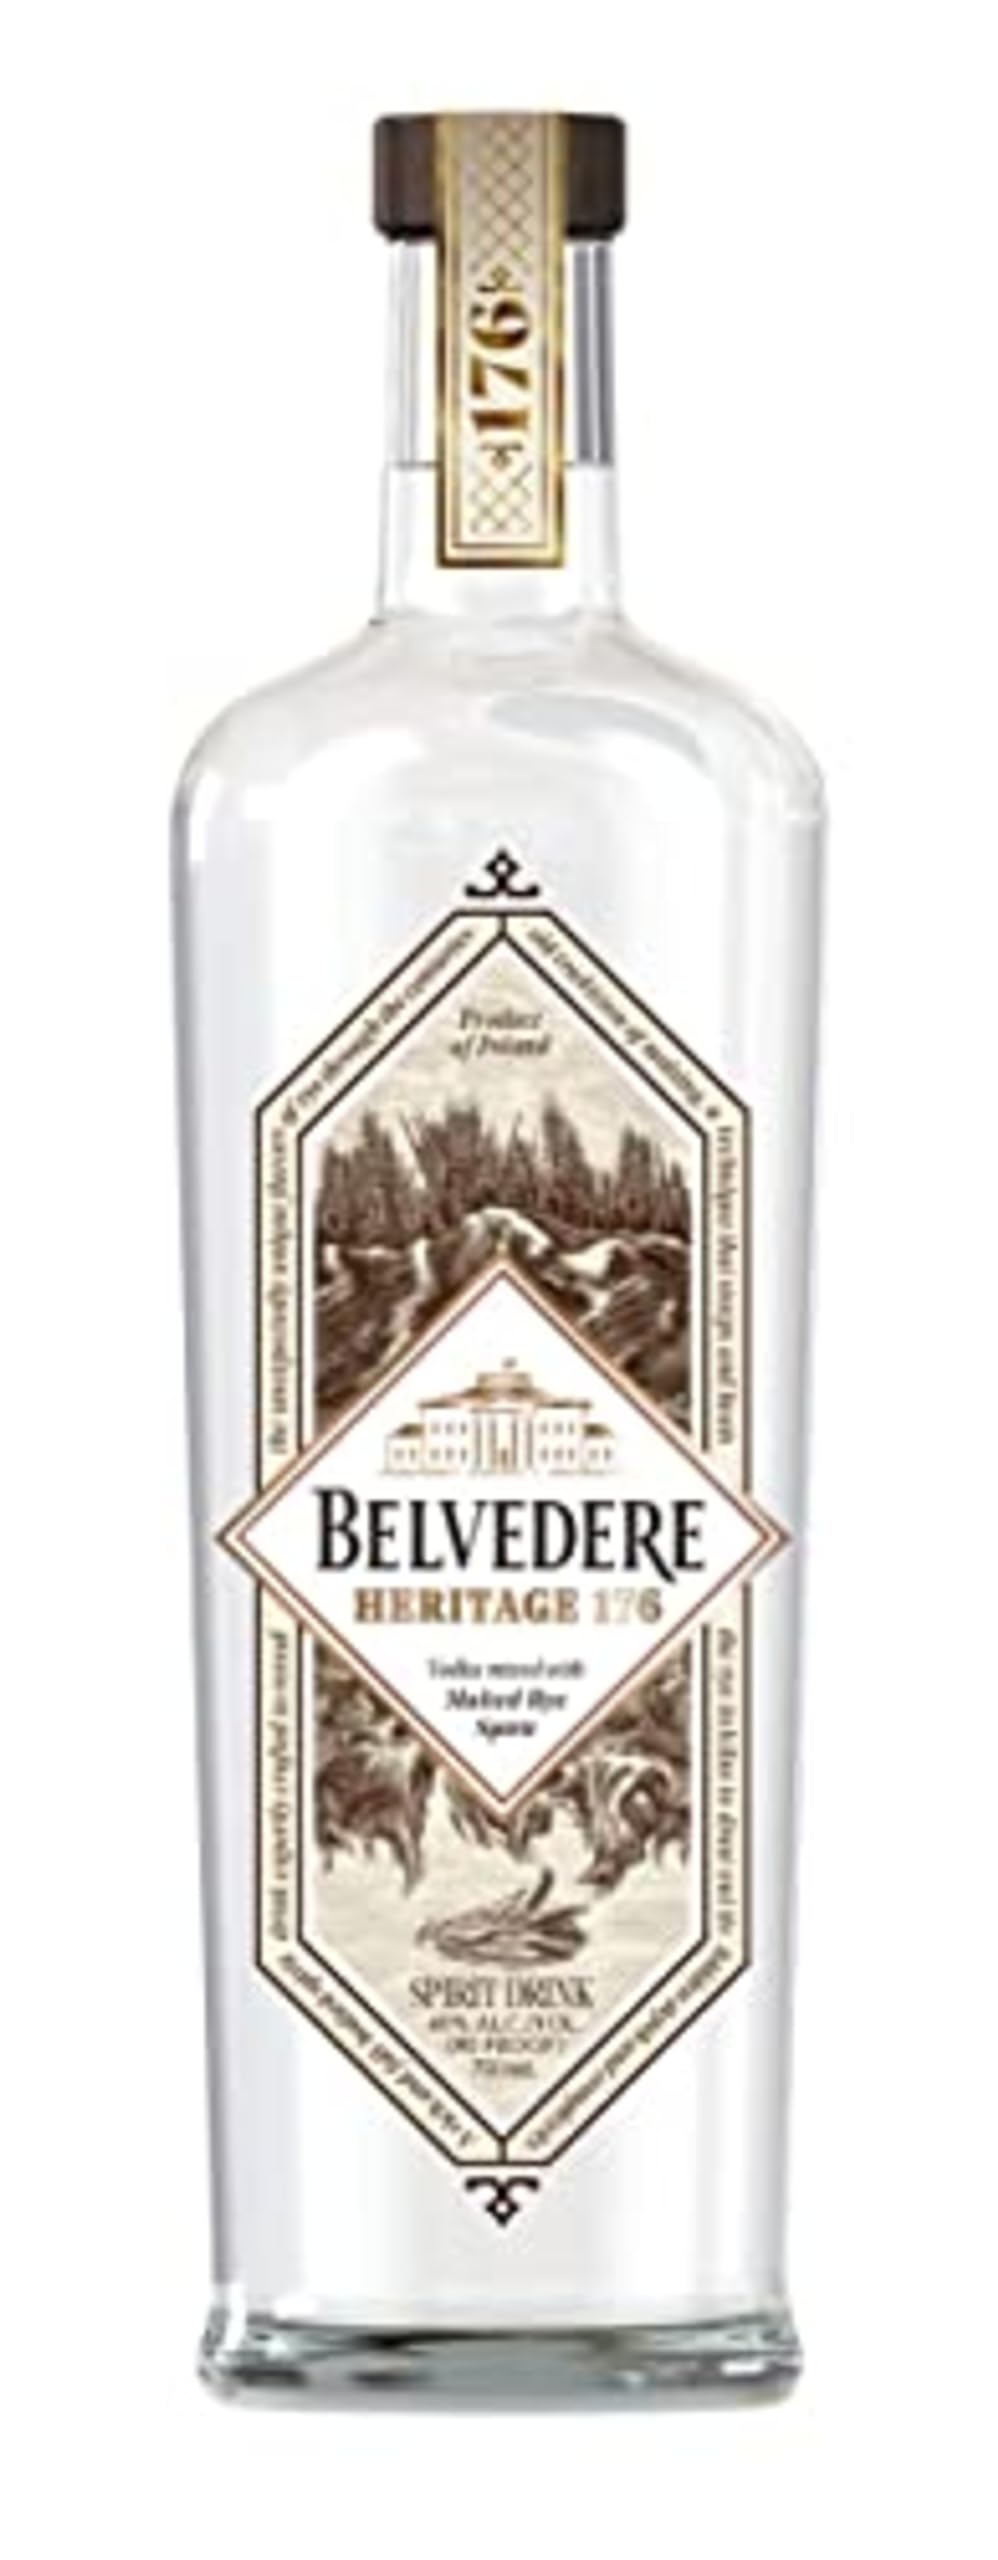 Belvedere Heritage 176 Spirit Drink 40% Vol. 0,7l, 700ml (1er Pack)